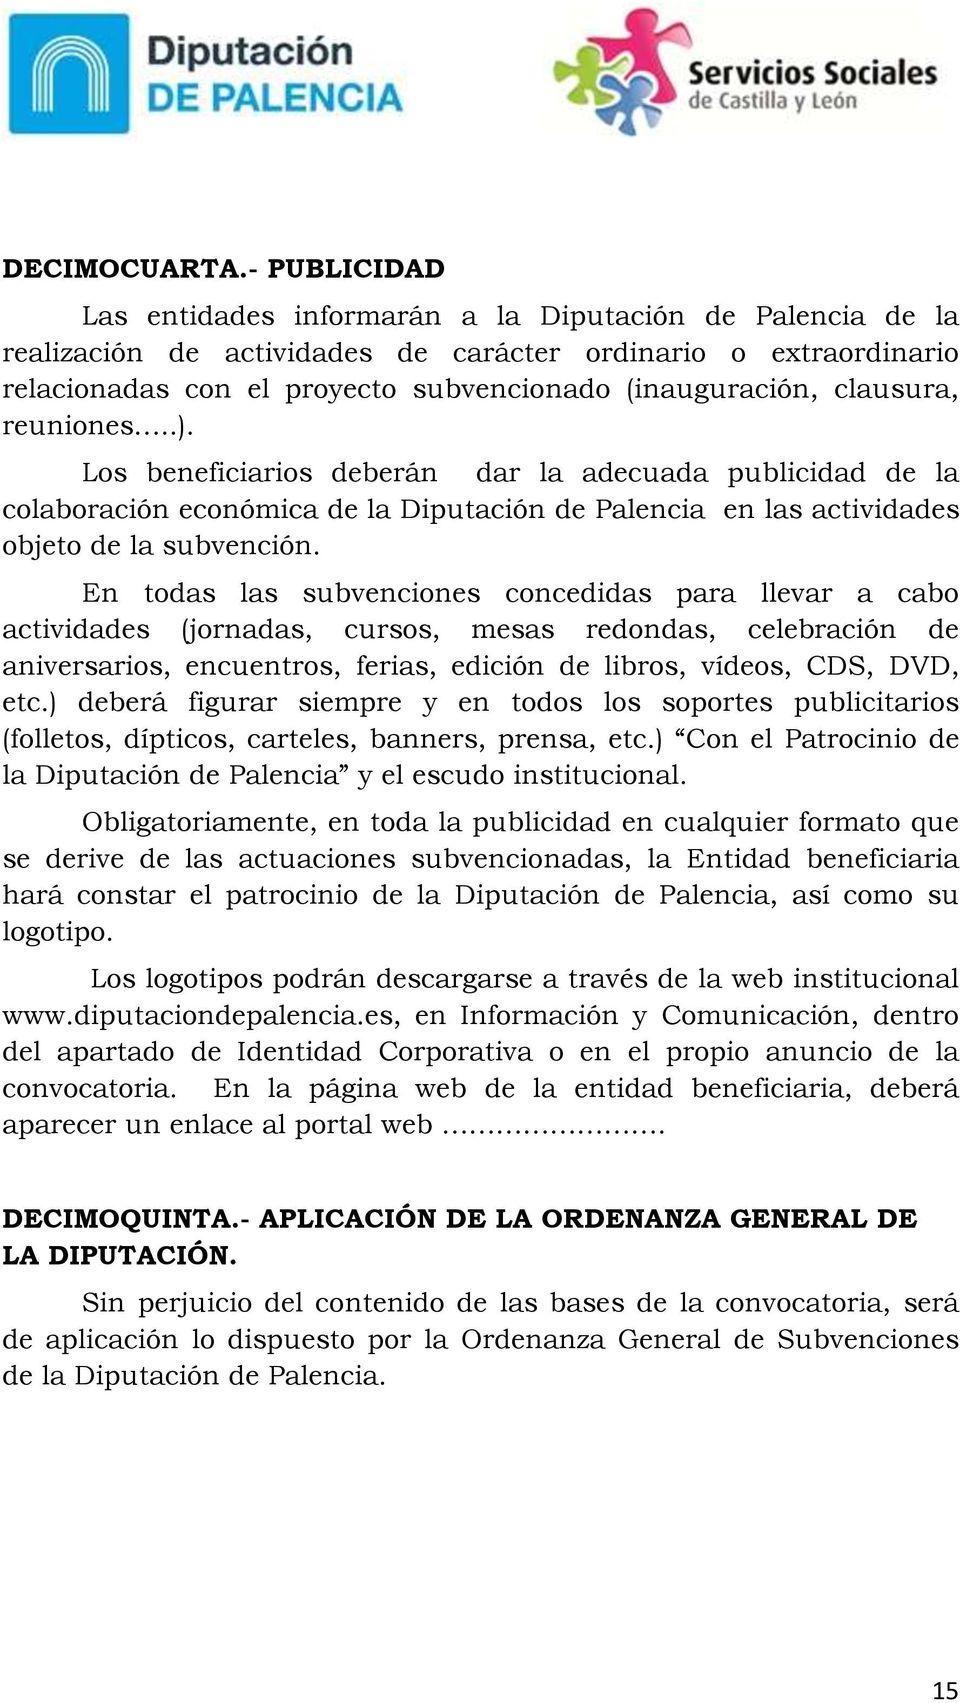 clausura, reuniones..). Los beneficiarios deberán dar la adecuada publicidad de la colaboración económica de la Diputación de Palencia en las actividades objeto de la subvención.